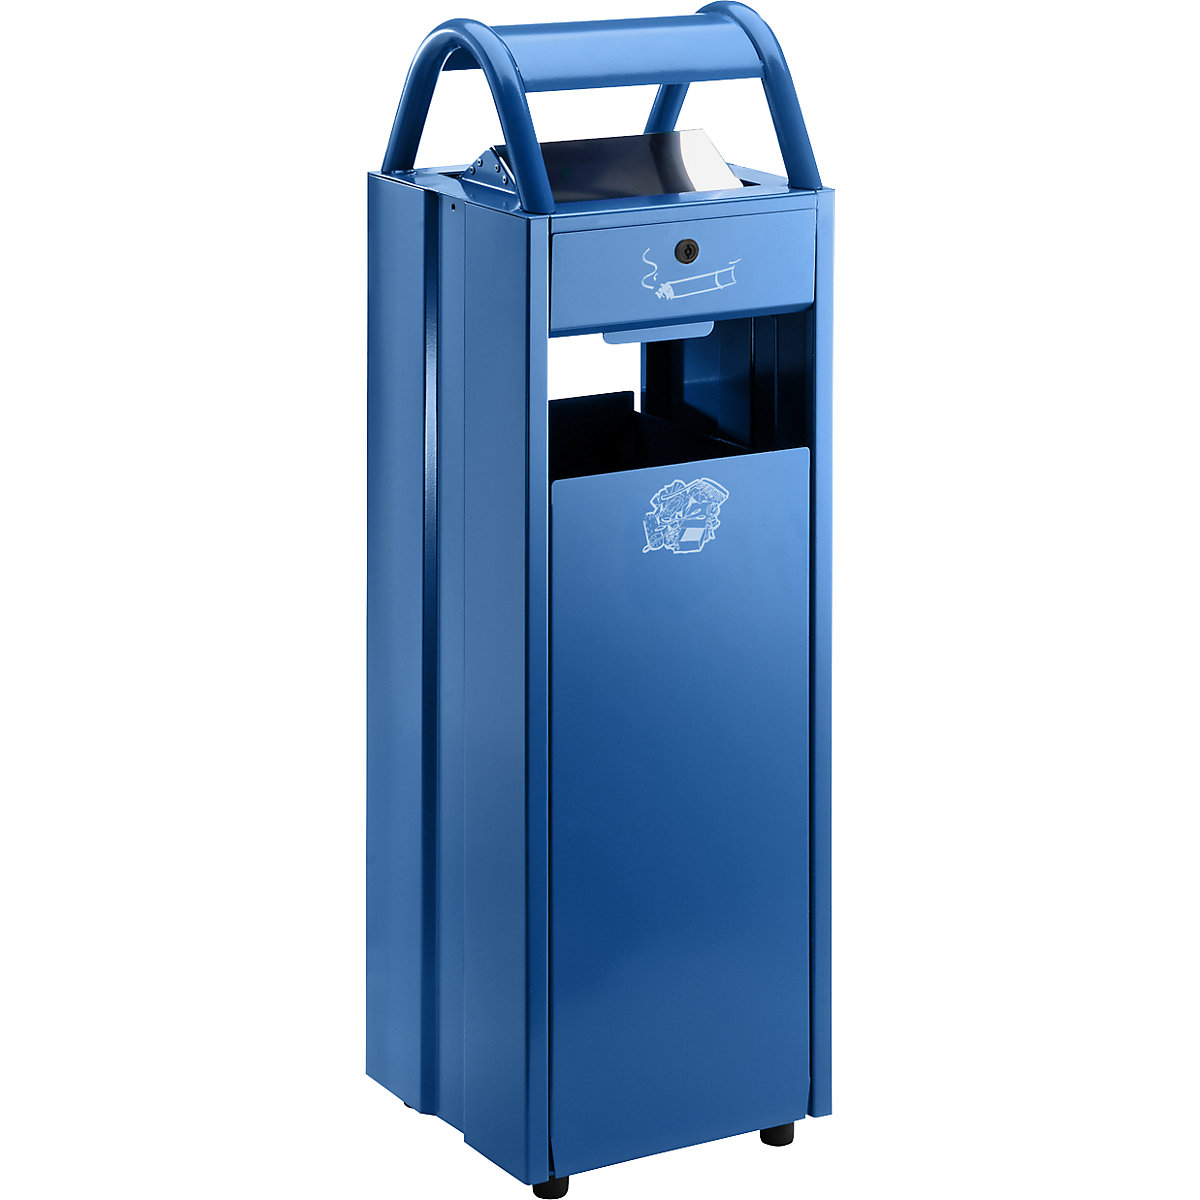 Collecteur de déchets avec cendrier et toit de protection – VAR, capacité 35 l, l x h x p 300 x 960 x 250 mm, bleu gentiane RAL 5010-6